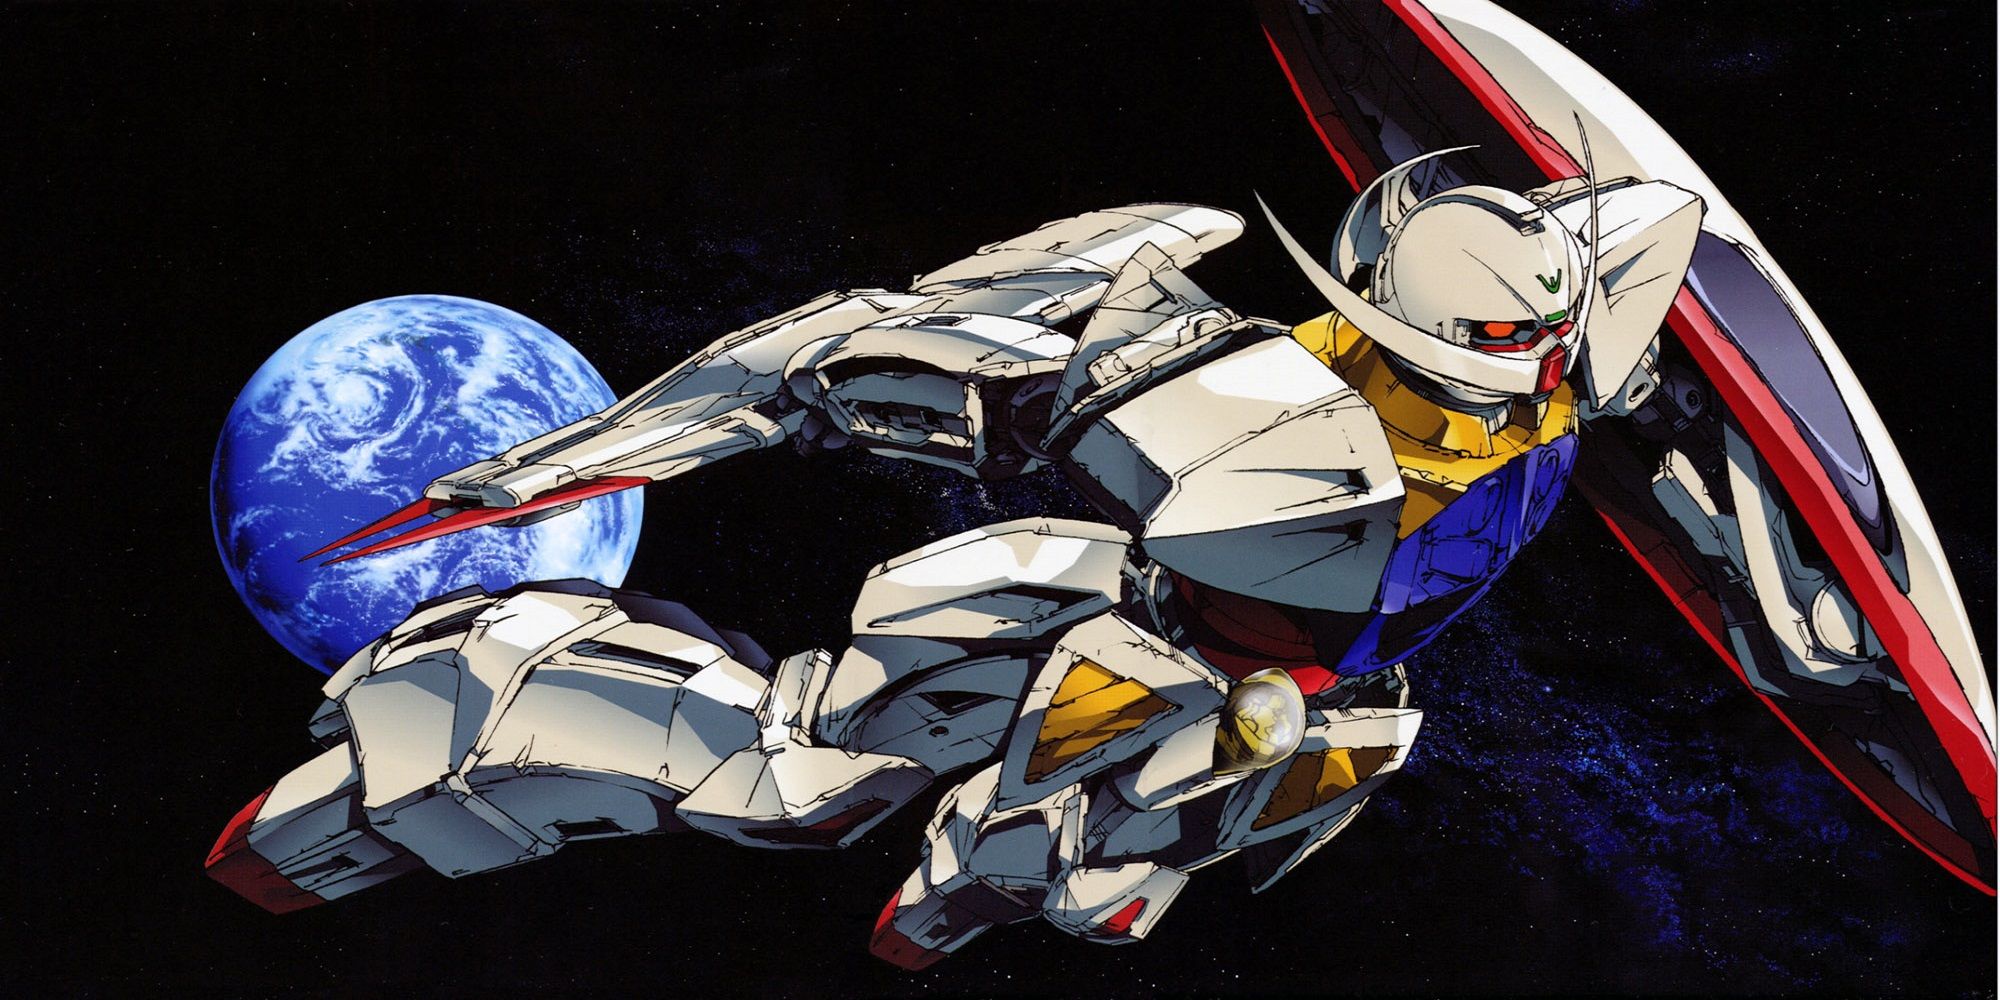 Turn A Gundam flying through space